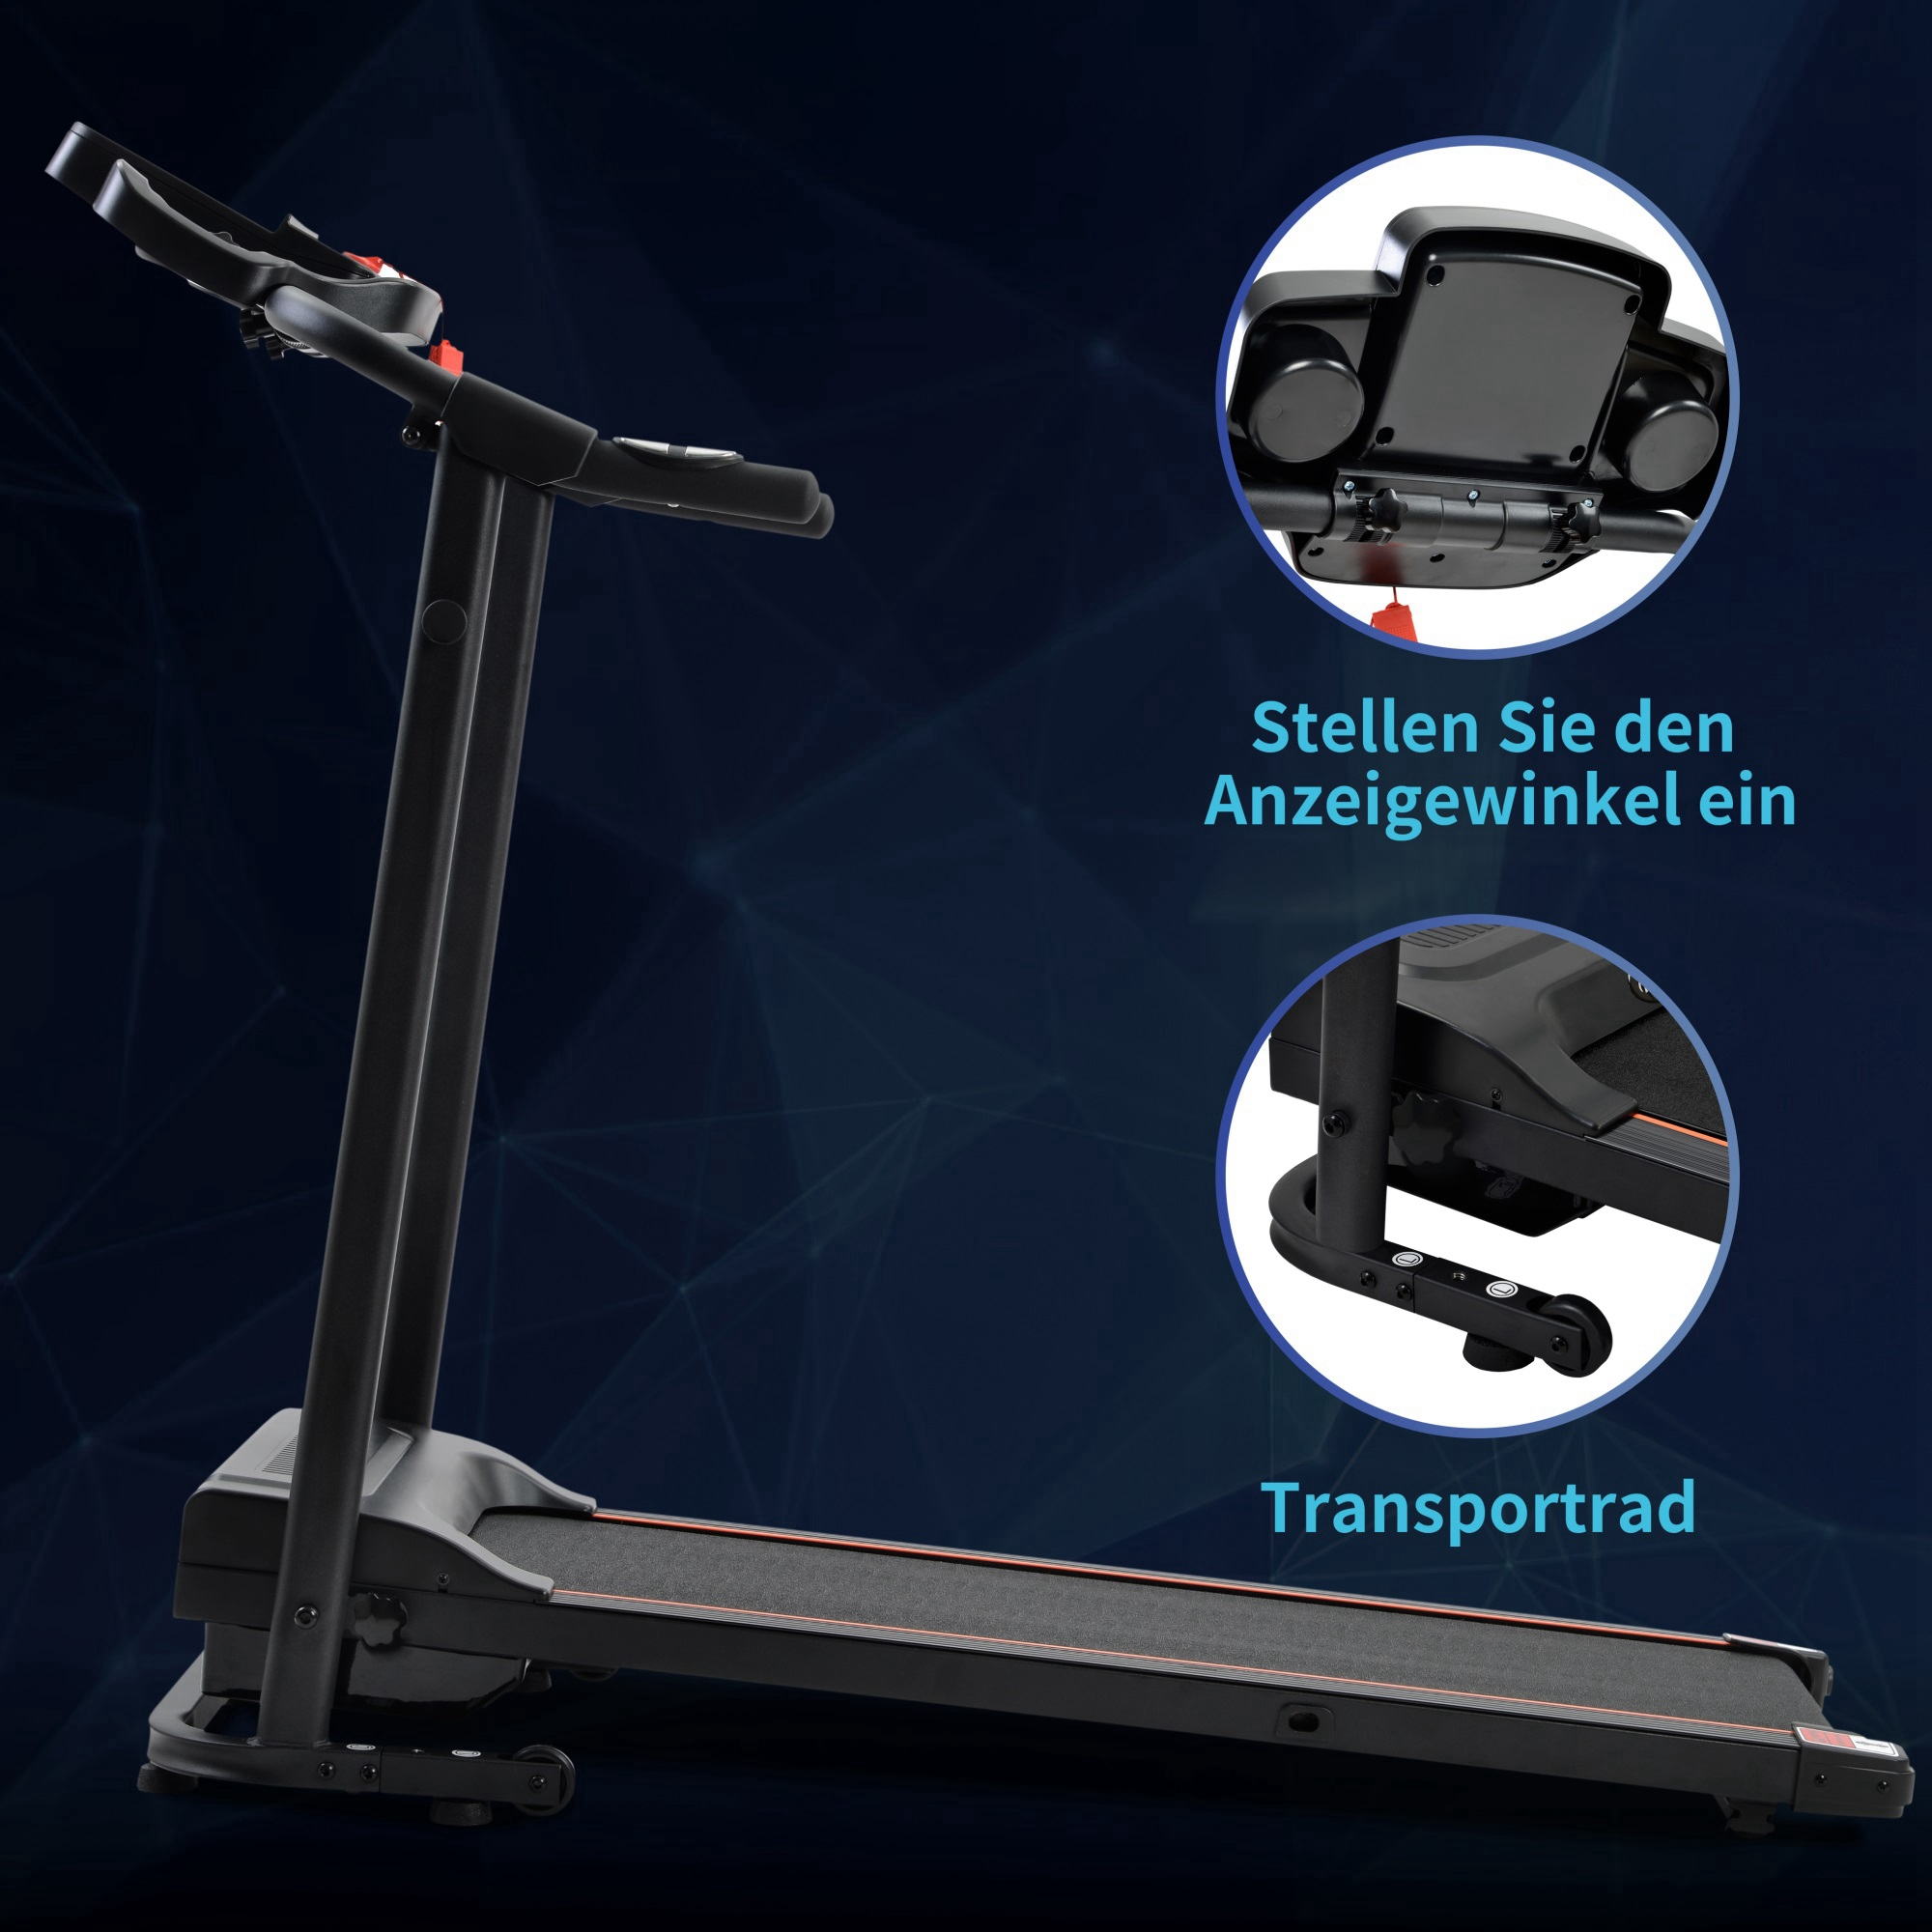 LINGDA Faltbare Laufband-Laufmaschine mit für Schwarz Laufband, Heimgymnastik-Fitness Lautsprecher